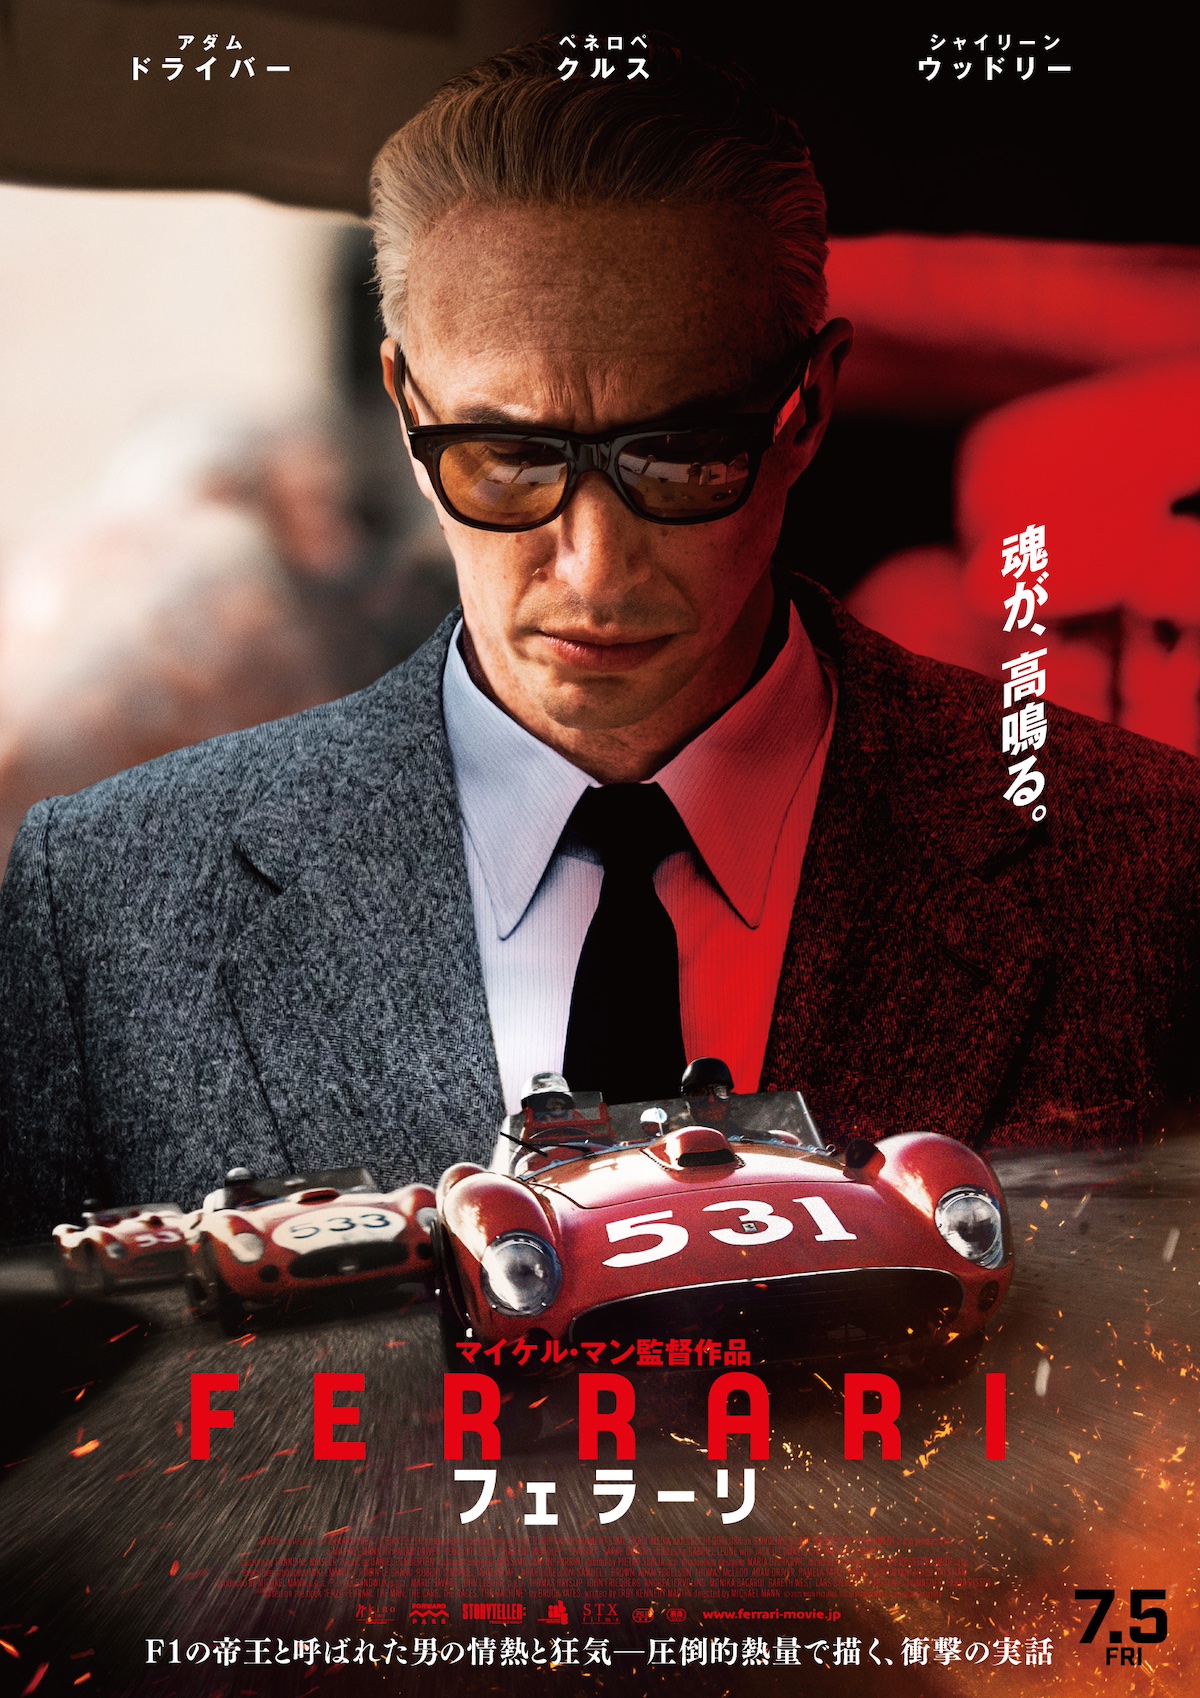 映画『フェラーリ』エンツォ・フェラーリ“私の車に乗るなら必ず勝て”—魂とV8エンジン音が高鳴る予告映像とポスター